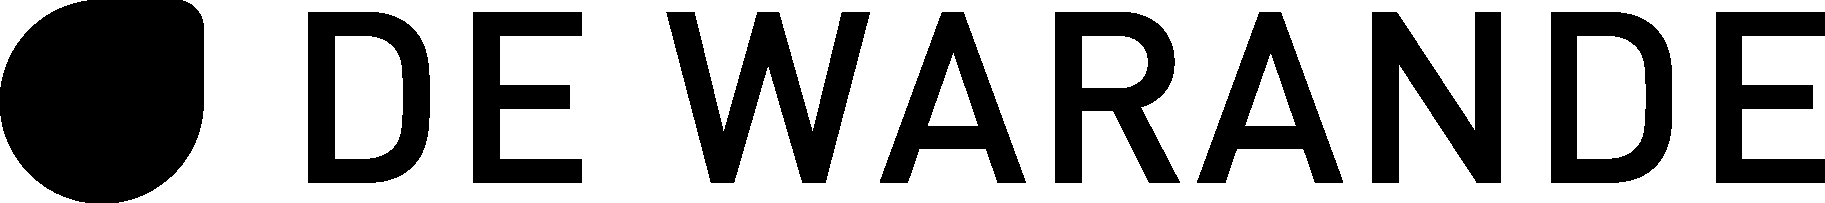 warande logo